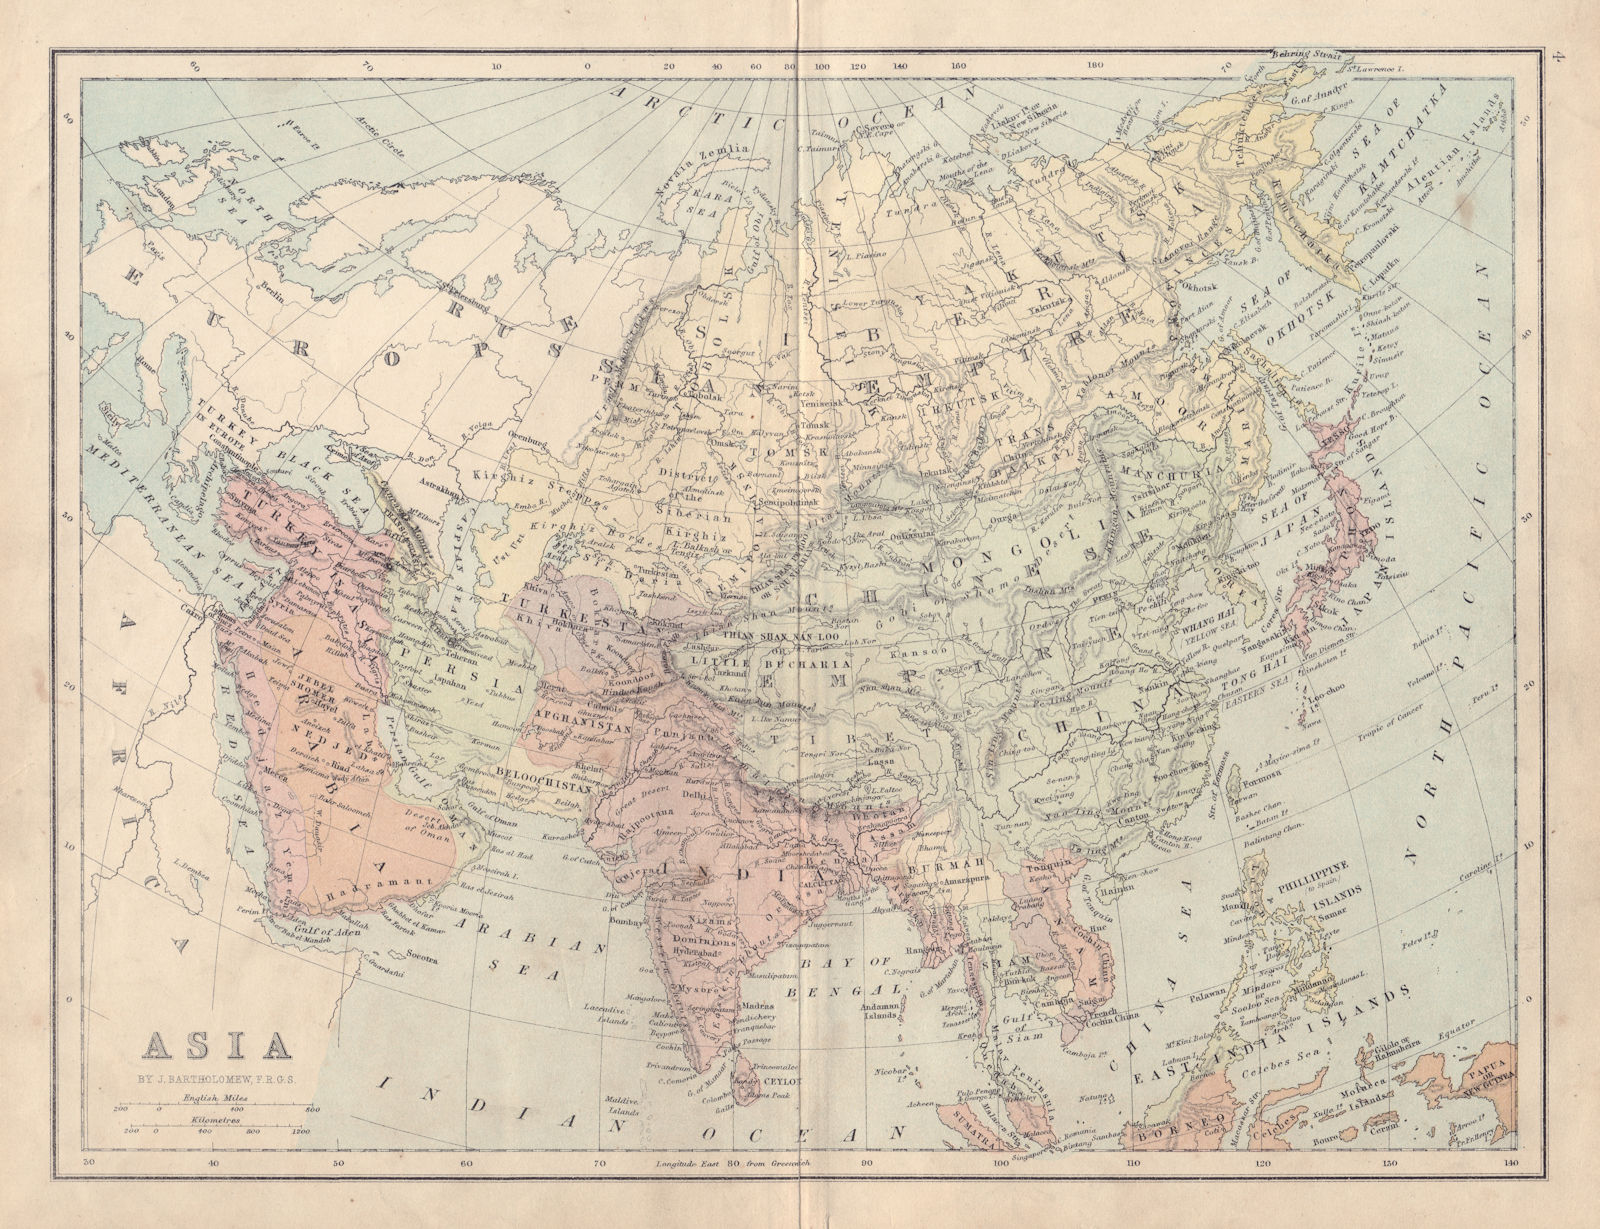 ASIA Ottoman Empire Turkestan Chinese Empire Oman Siam COLLINS 1873 old map